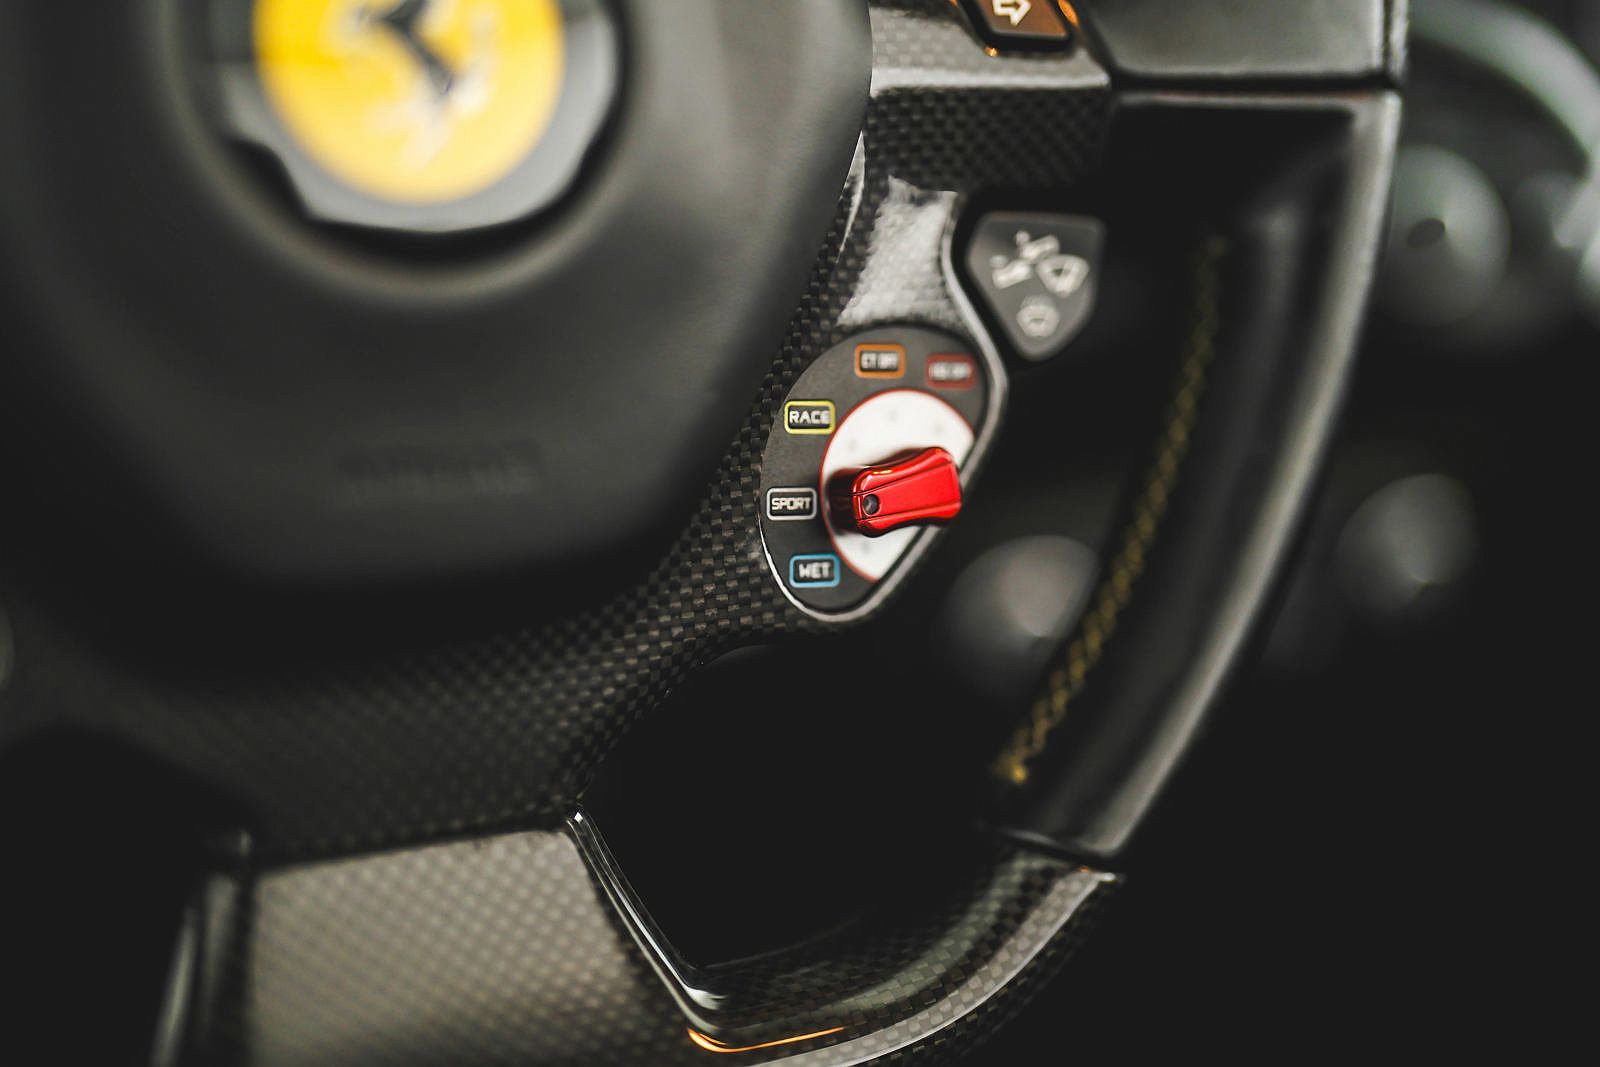 2014 Ferrari 458 Italia image 15